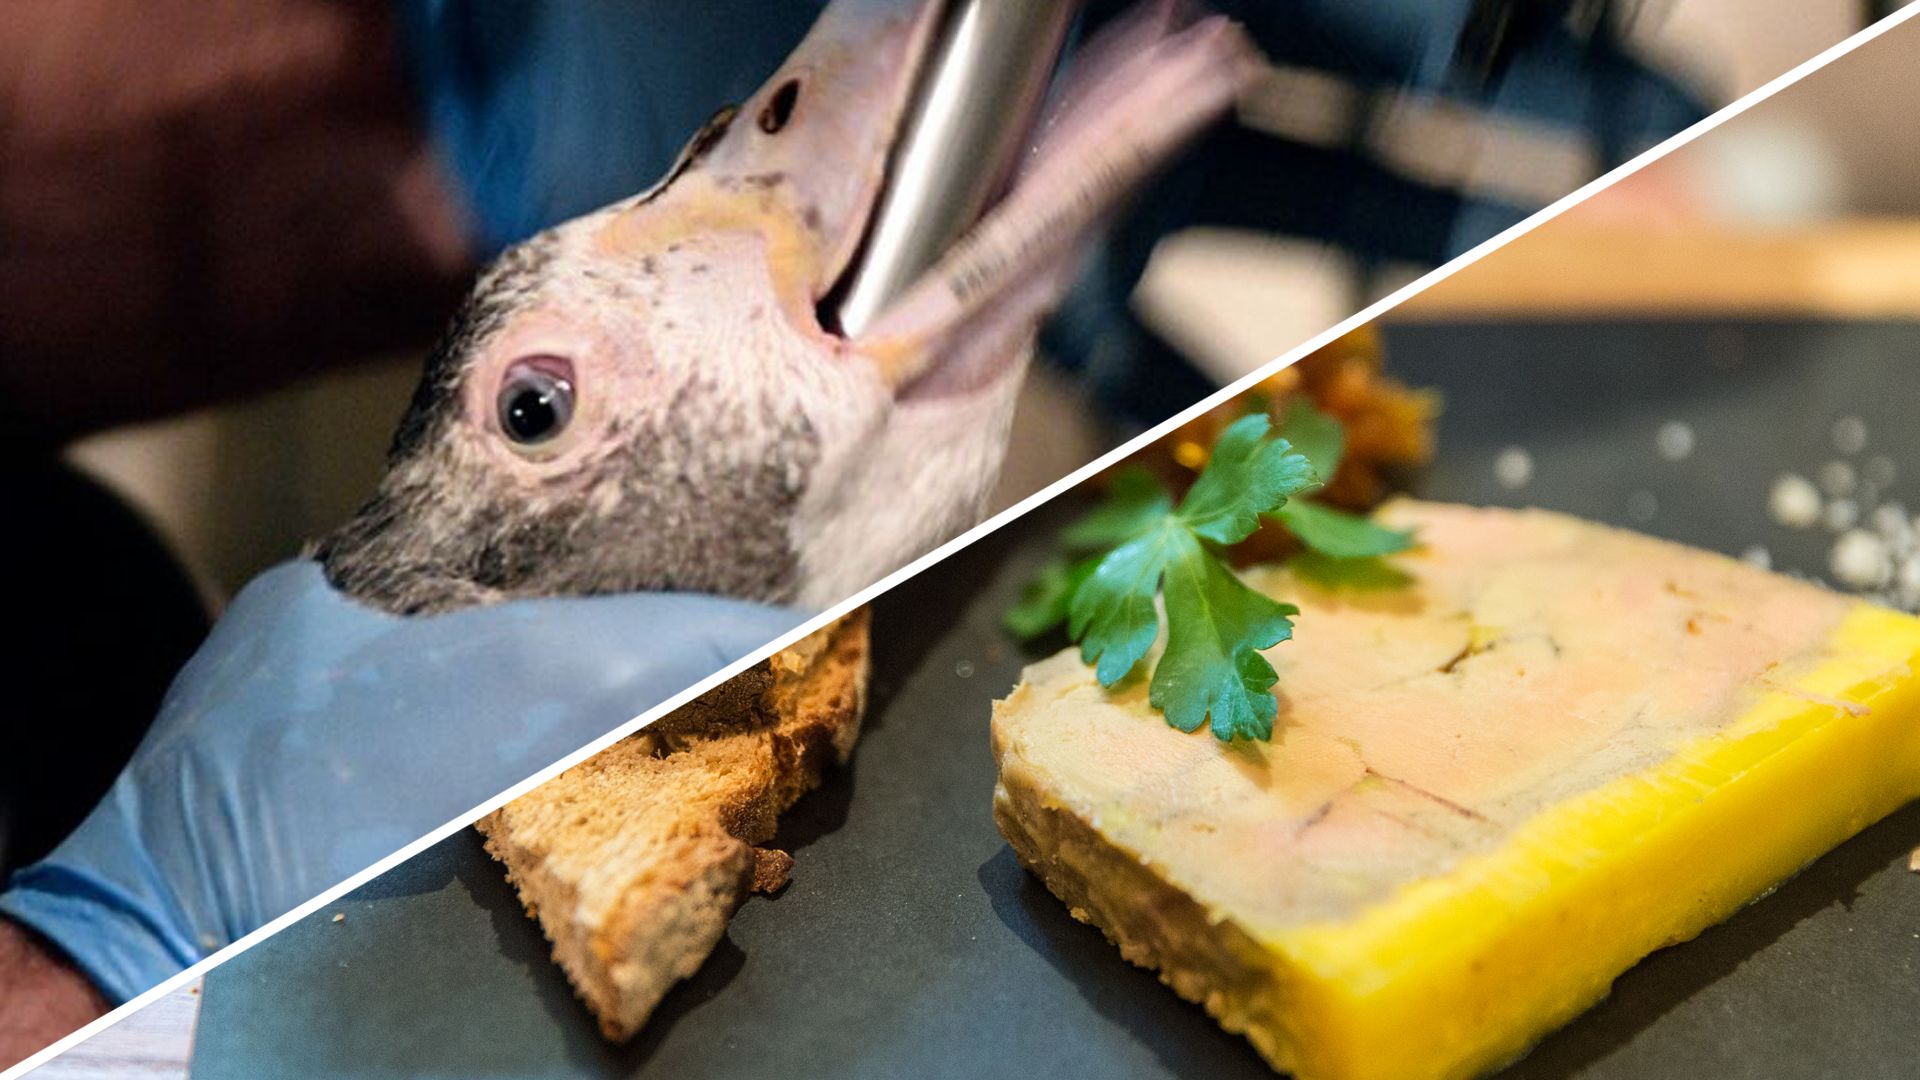 Voulez-vous encore du foie gras wallon ?